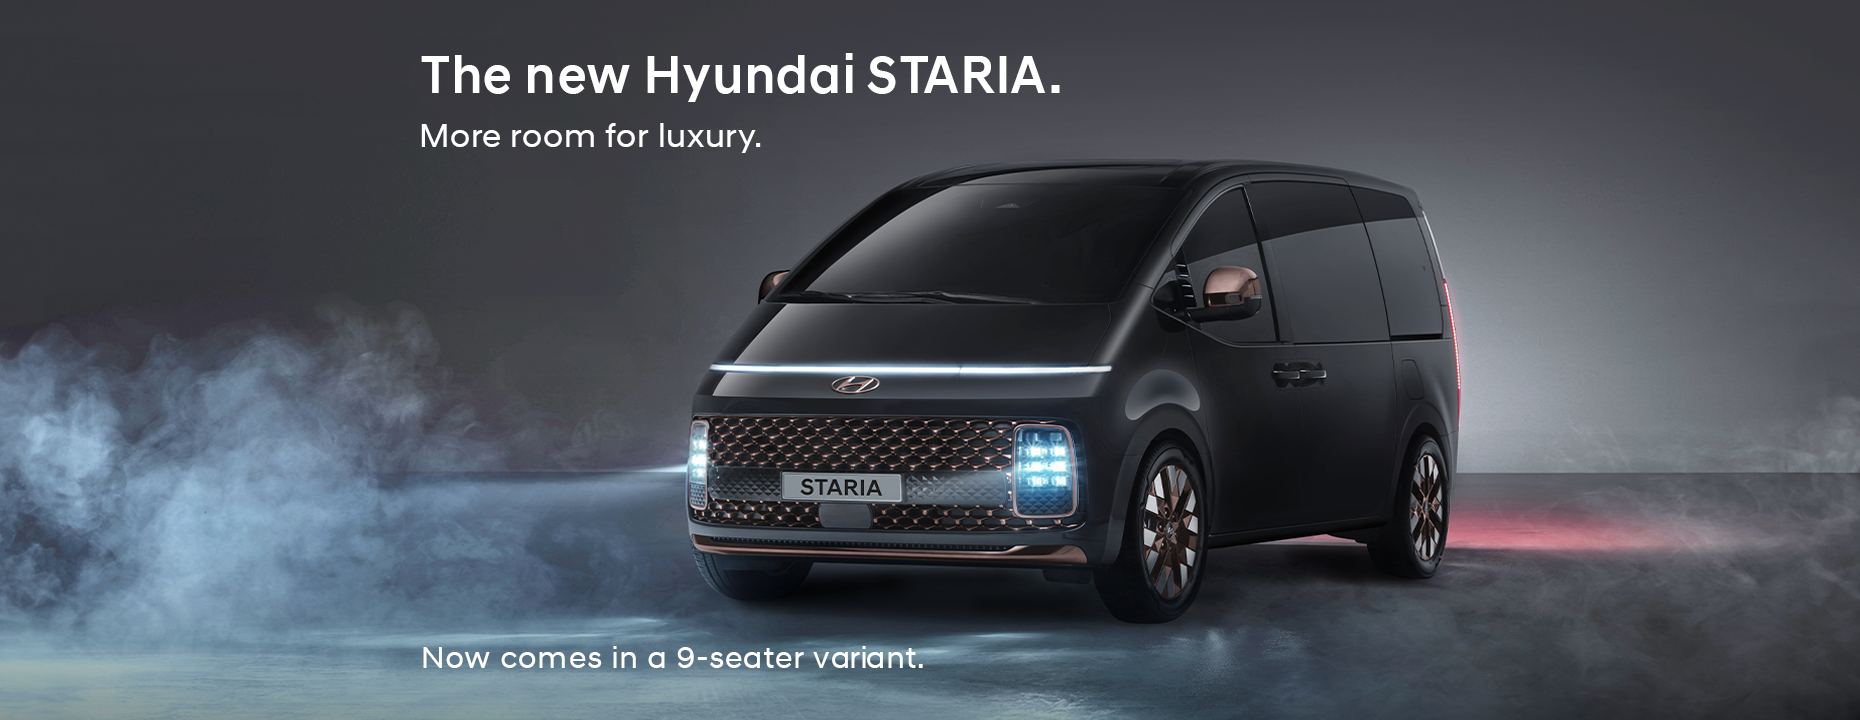 image of the Hyundai STARIA 9-seater van in black